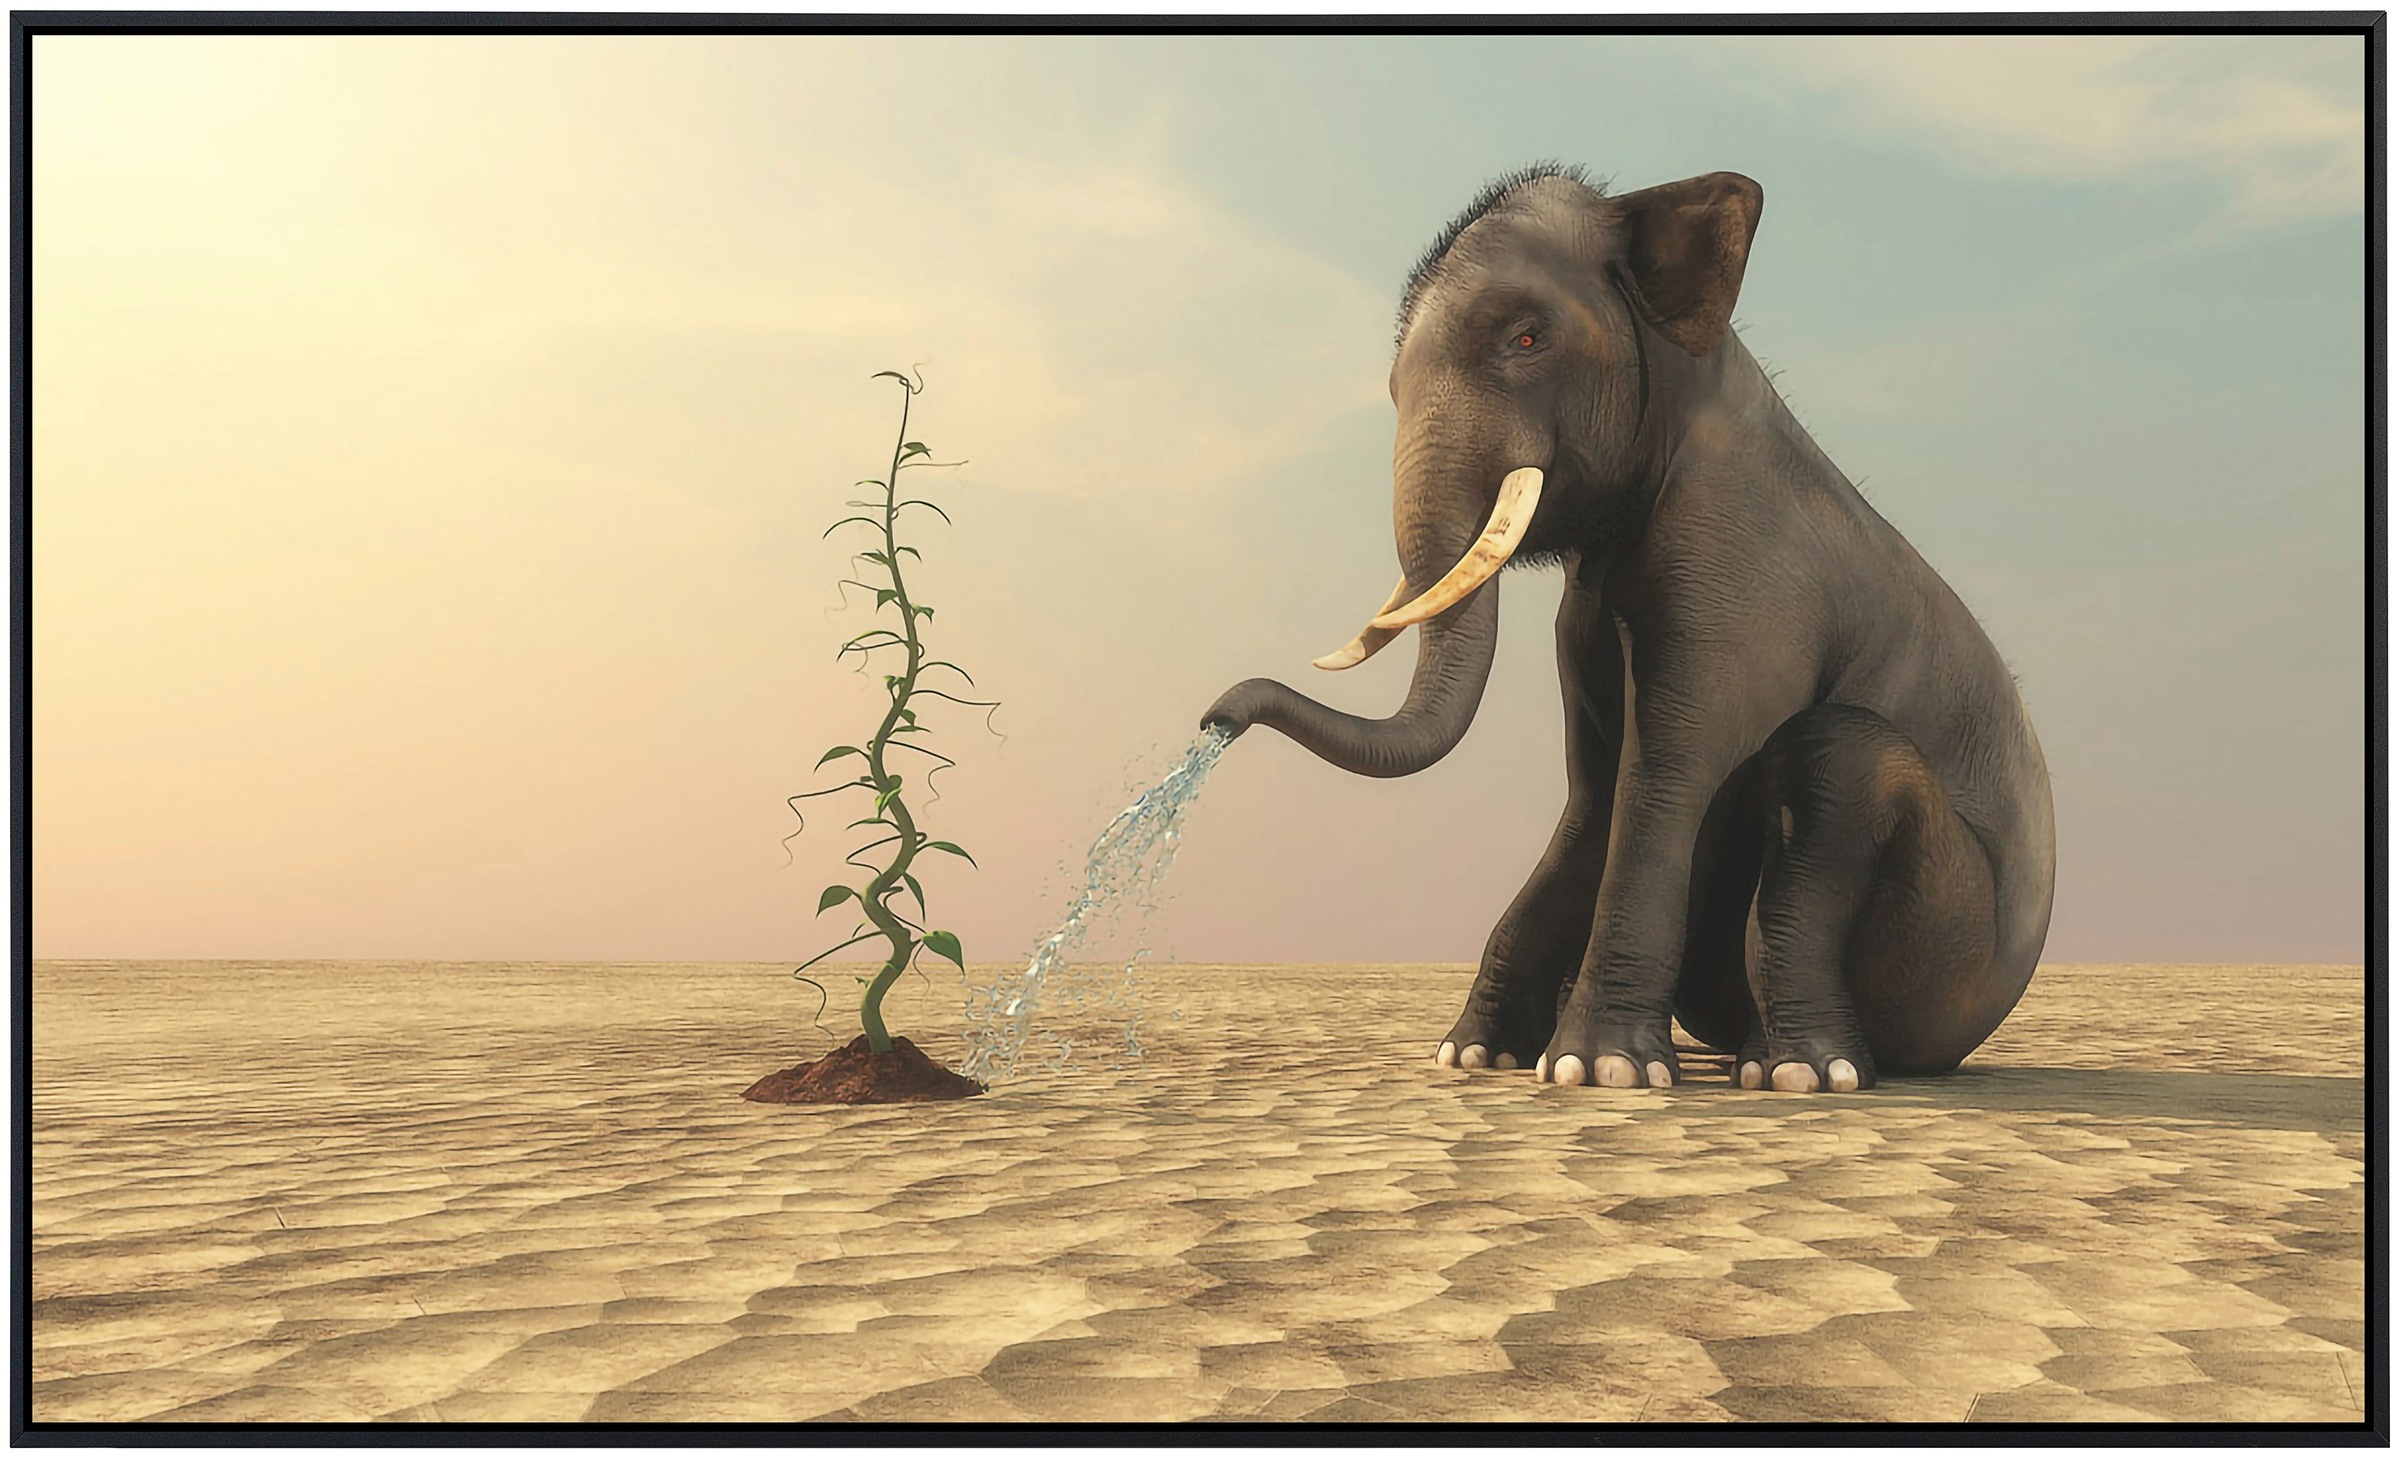 Papermoon Infrarotheizung »Elefanten, die Bohnen gießen«, sehr angenehme Strahlungswärme